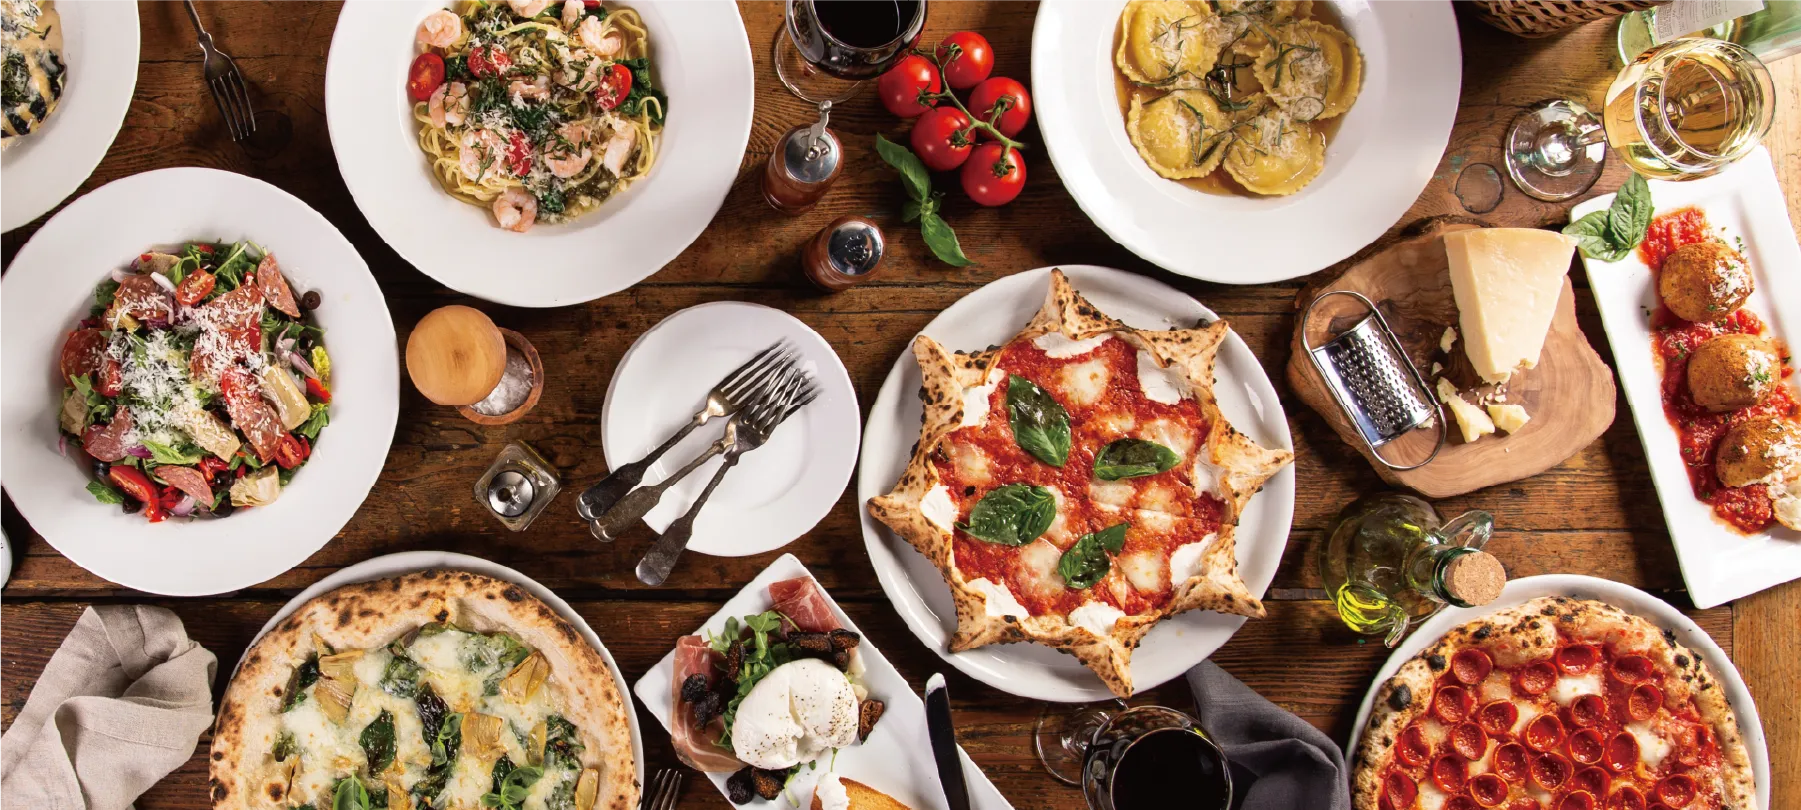 コンセプトは、店主がイタリアで観た「陽気なイタリア食堂」。
供するのは、地産地消の旬食材を使ったカジュアルなイタリア料理。